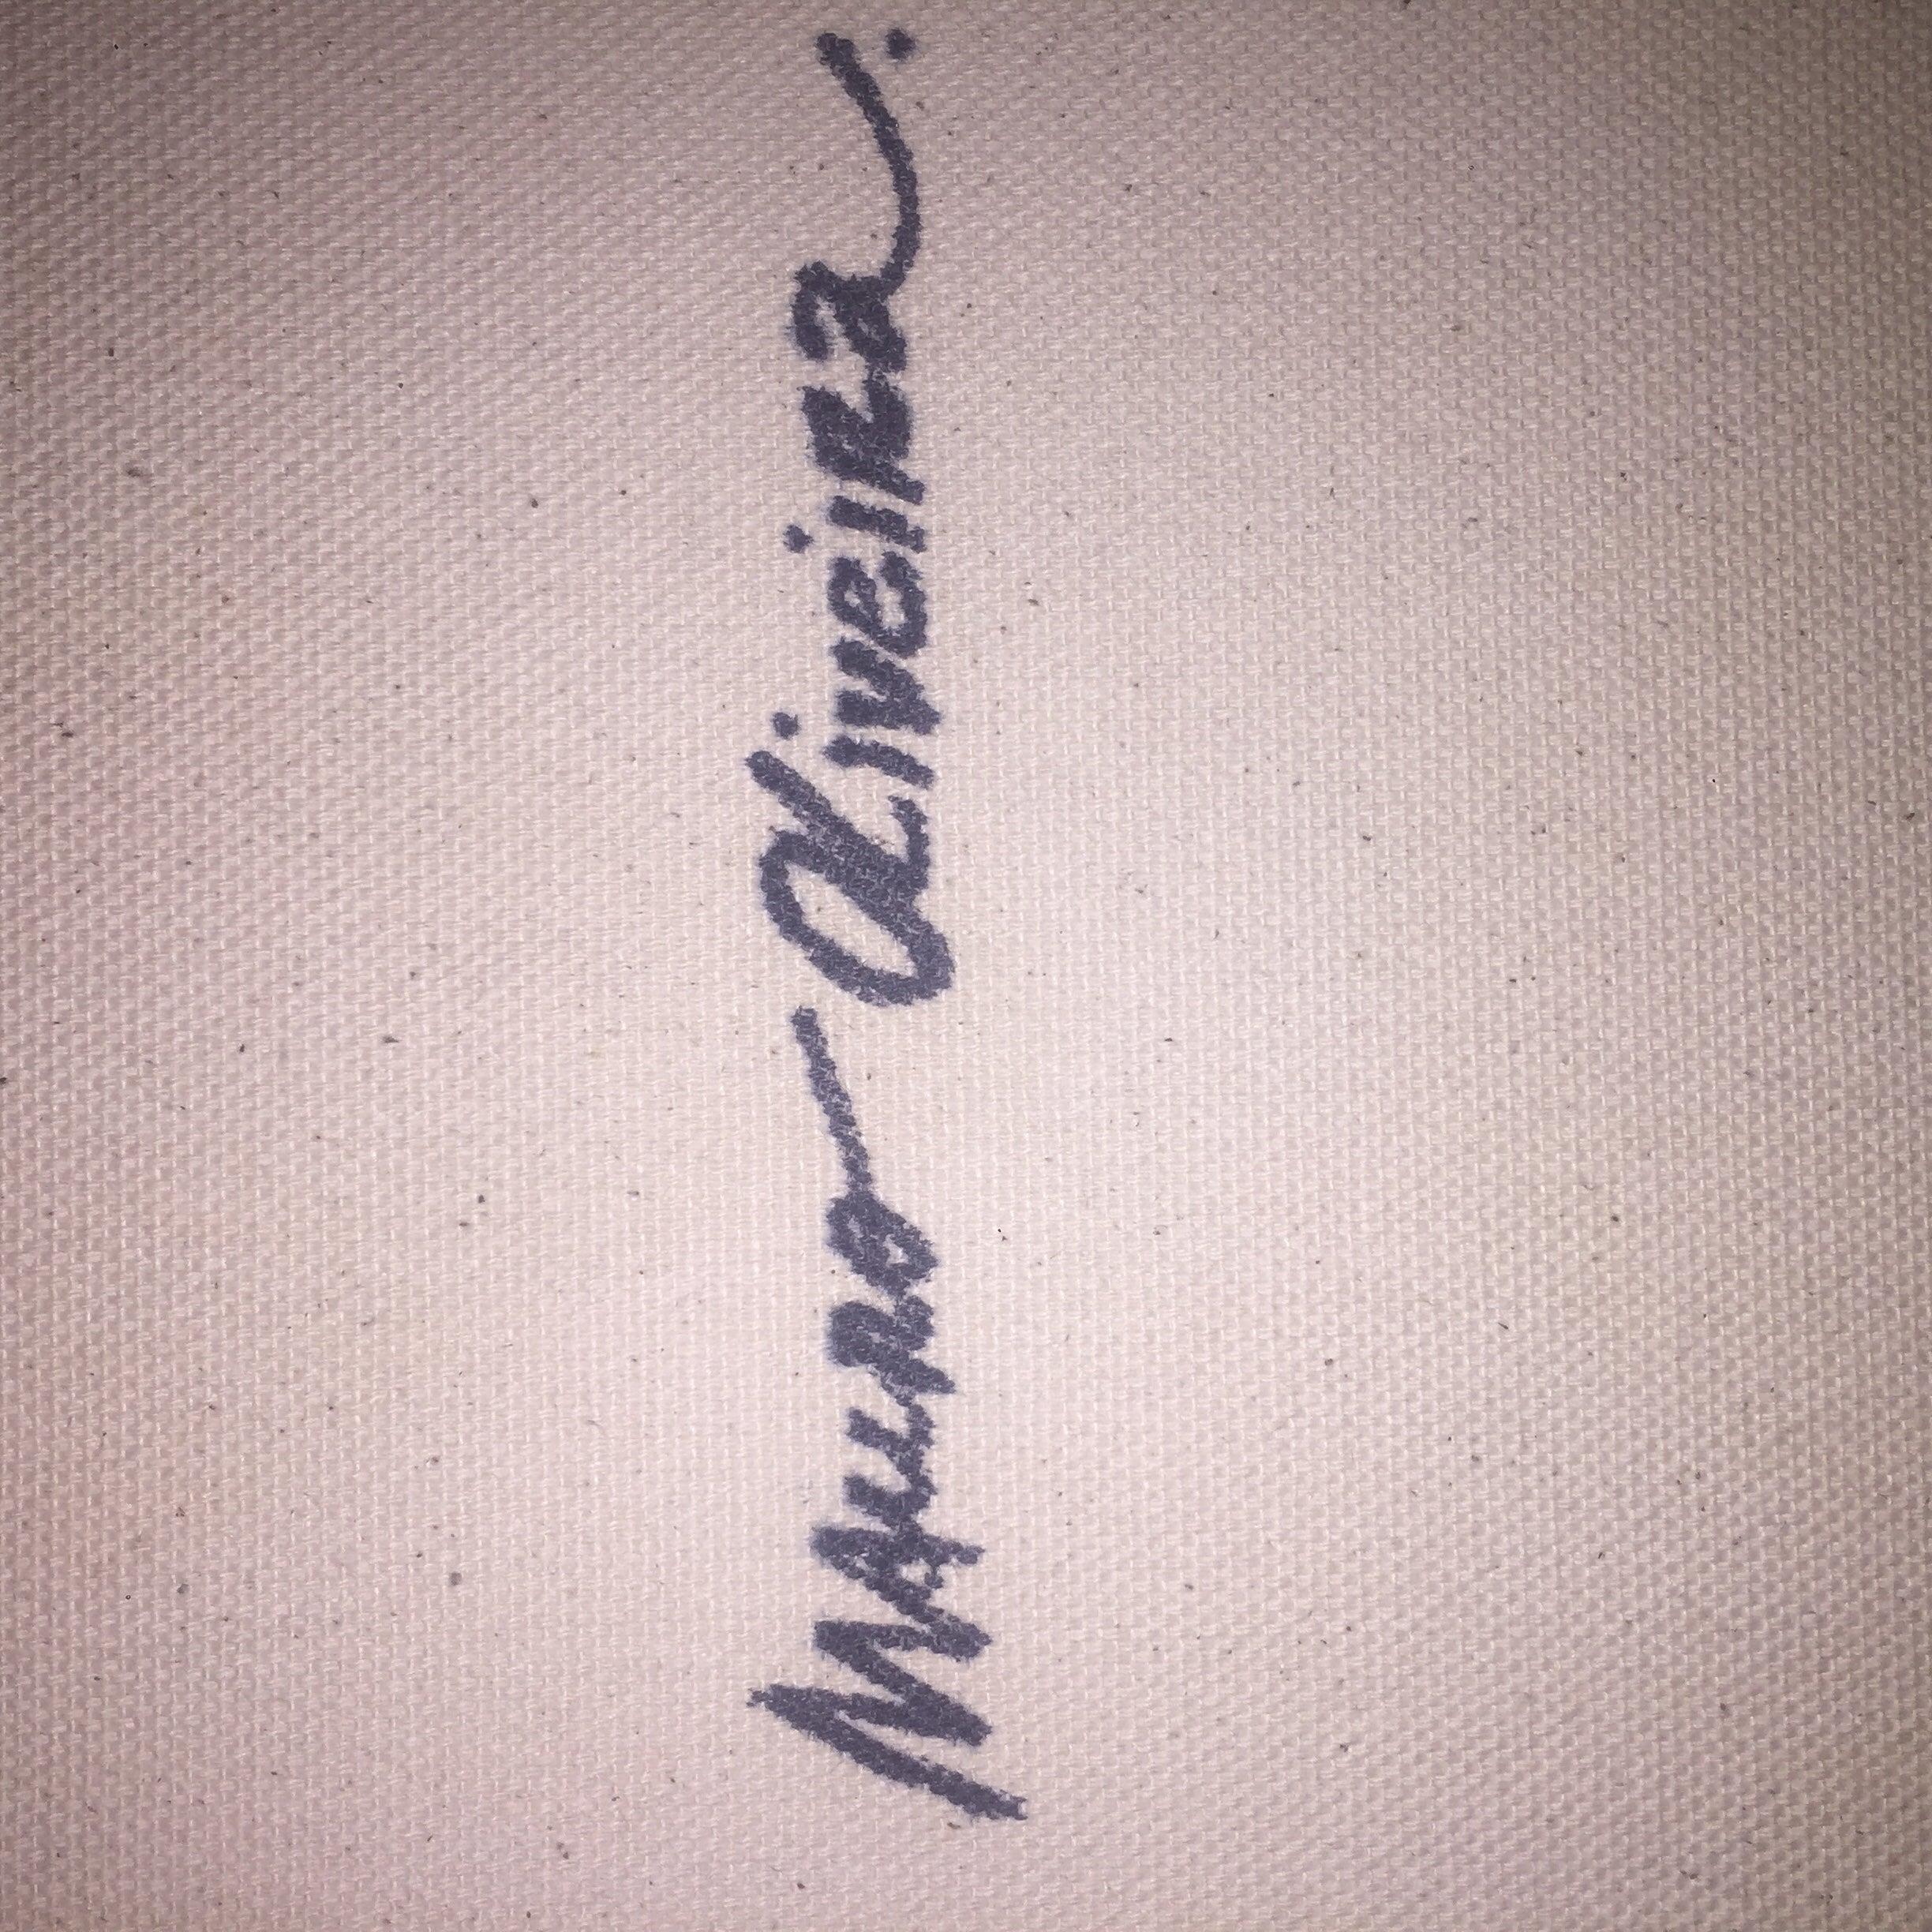 Ein Fest für die einzigartige Marilyn Monroe von Mauro Oliveira. 

Limitierte Auflage von 30 Giclee-Drucken in Museumsqualität auf CANVAS, vom Künstler signiert und nummeriert. Druckvorlaufzeit 1 Woche. 

Ein vom Künstler ausgestelltes